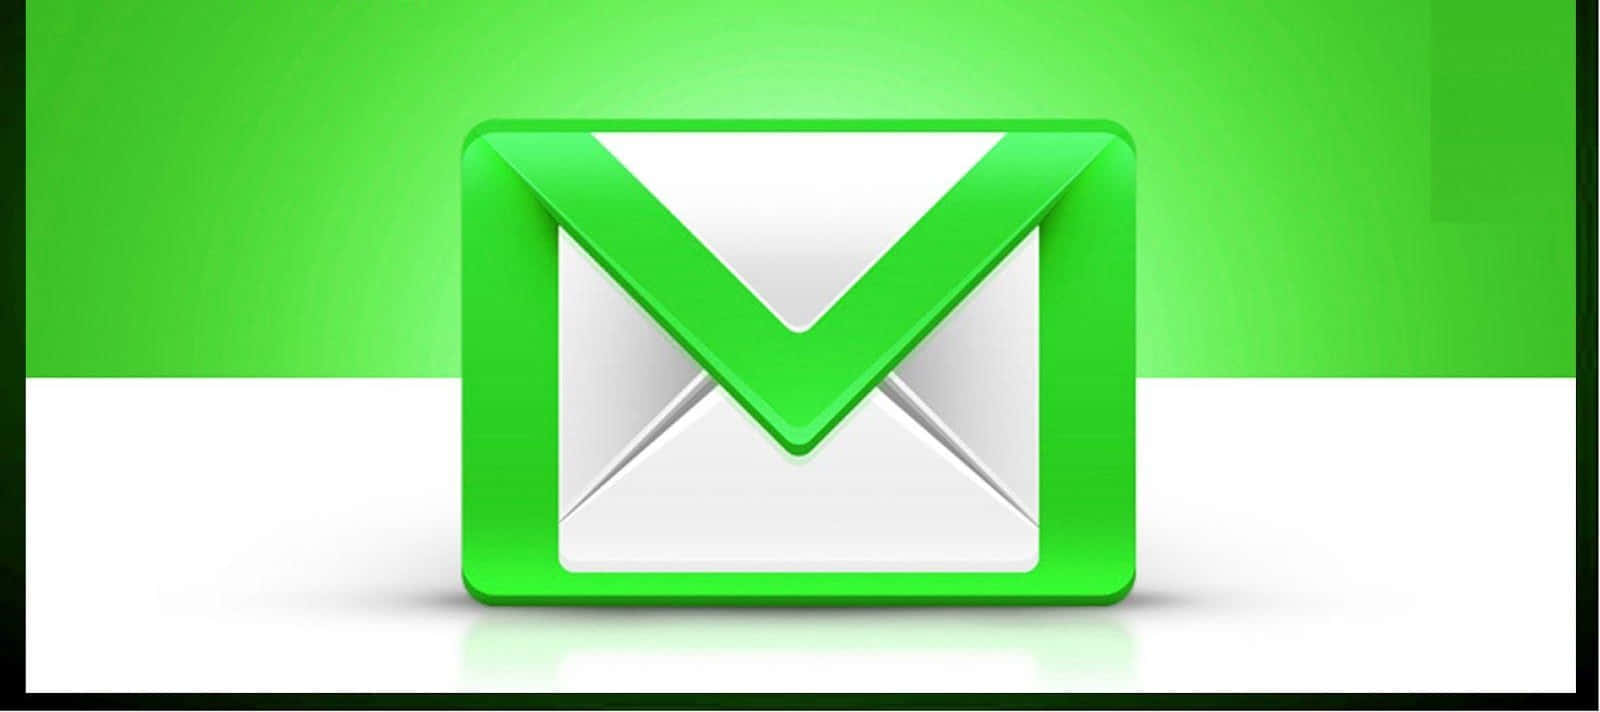 Engrön Och Vit Mejl-ikon På En Grön Bakgrund